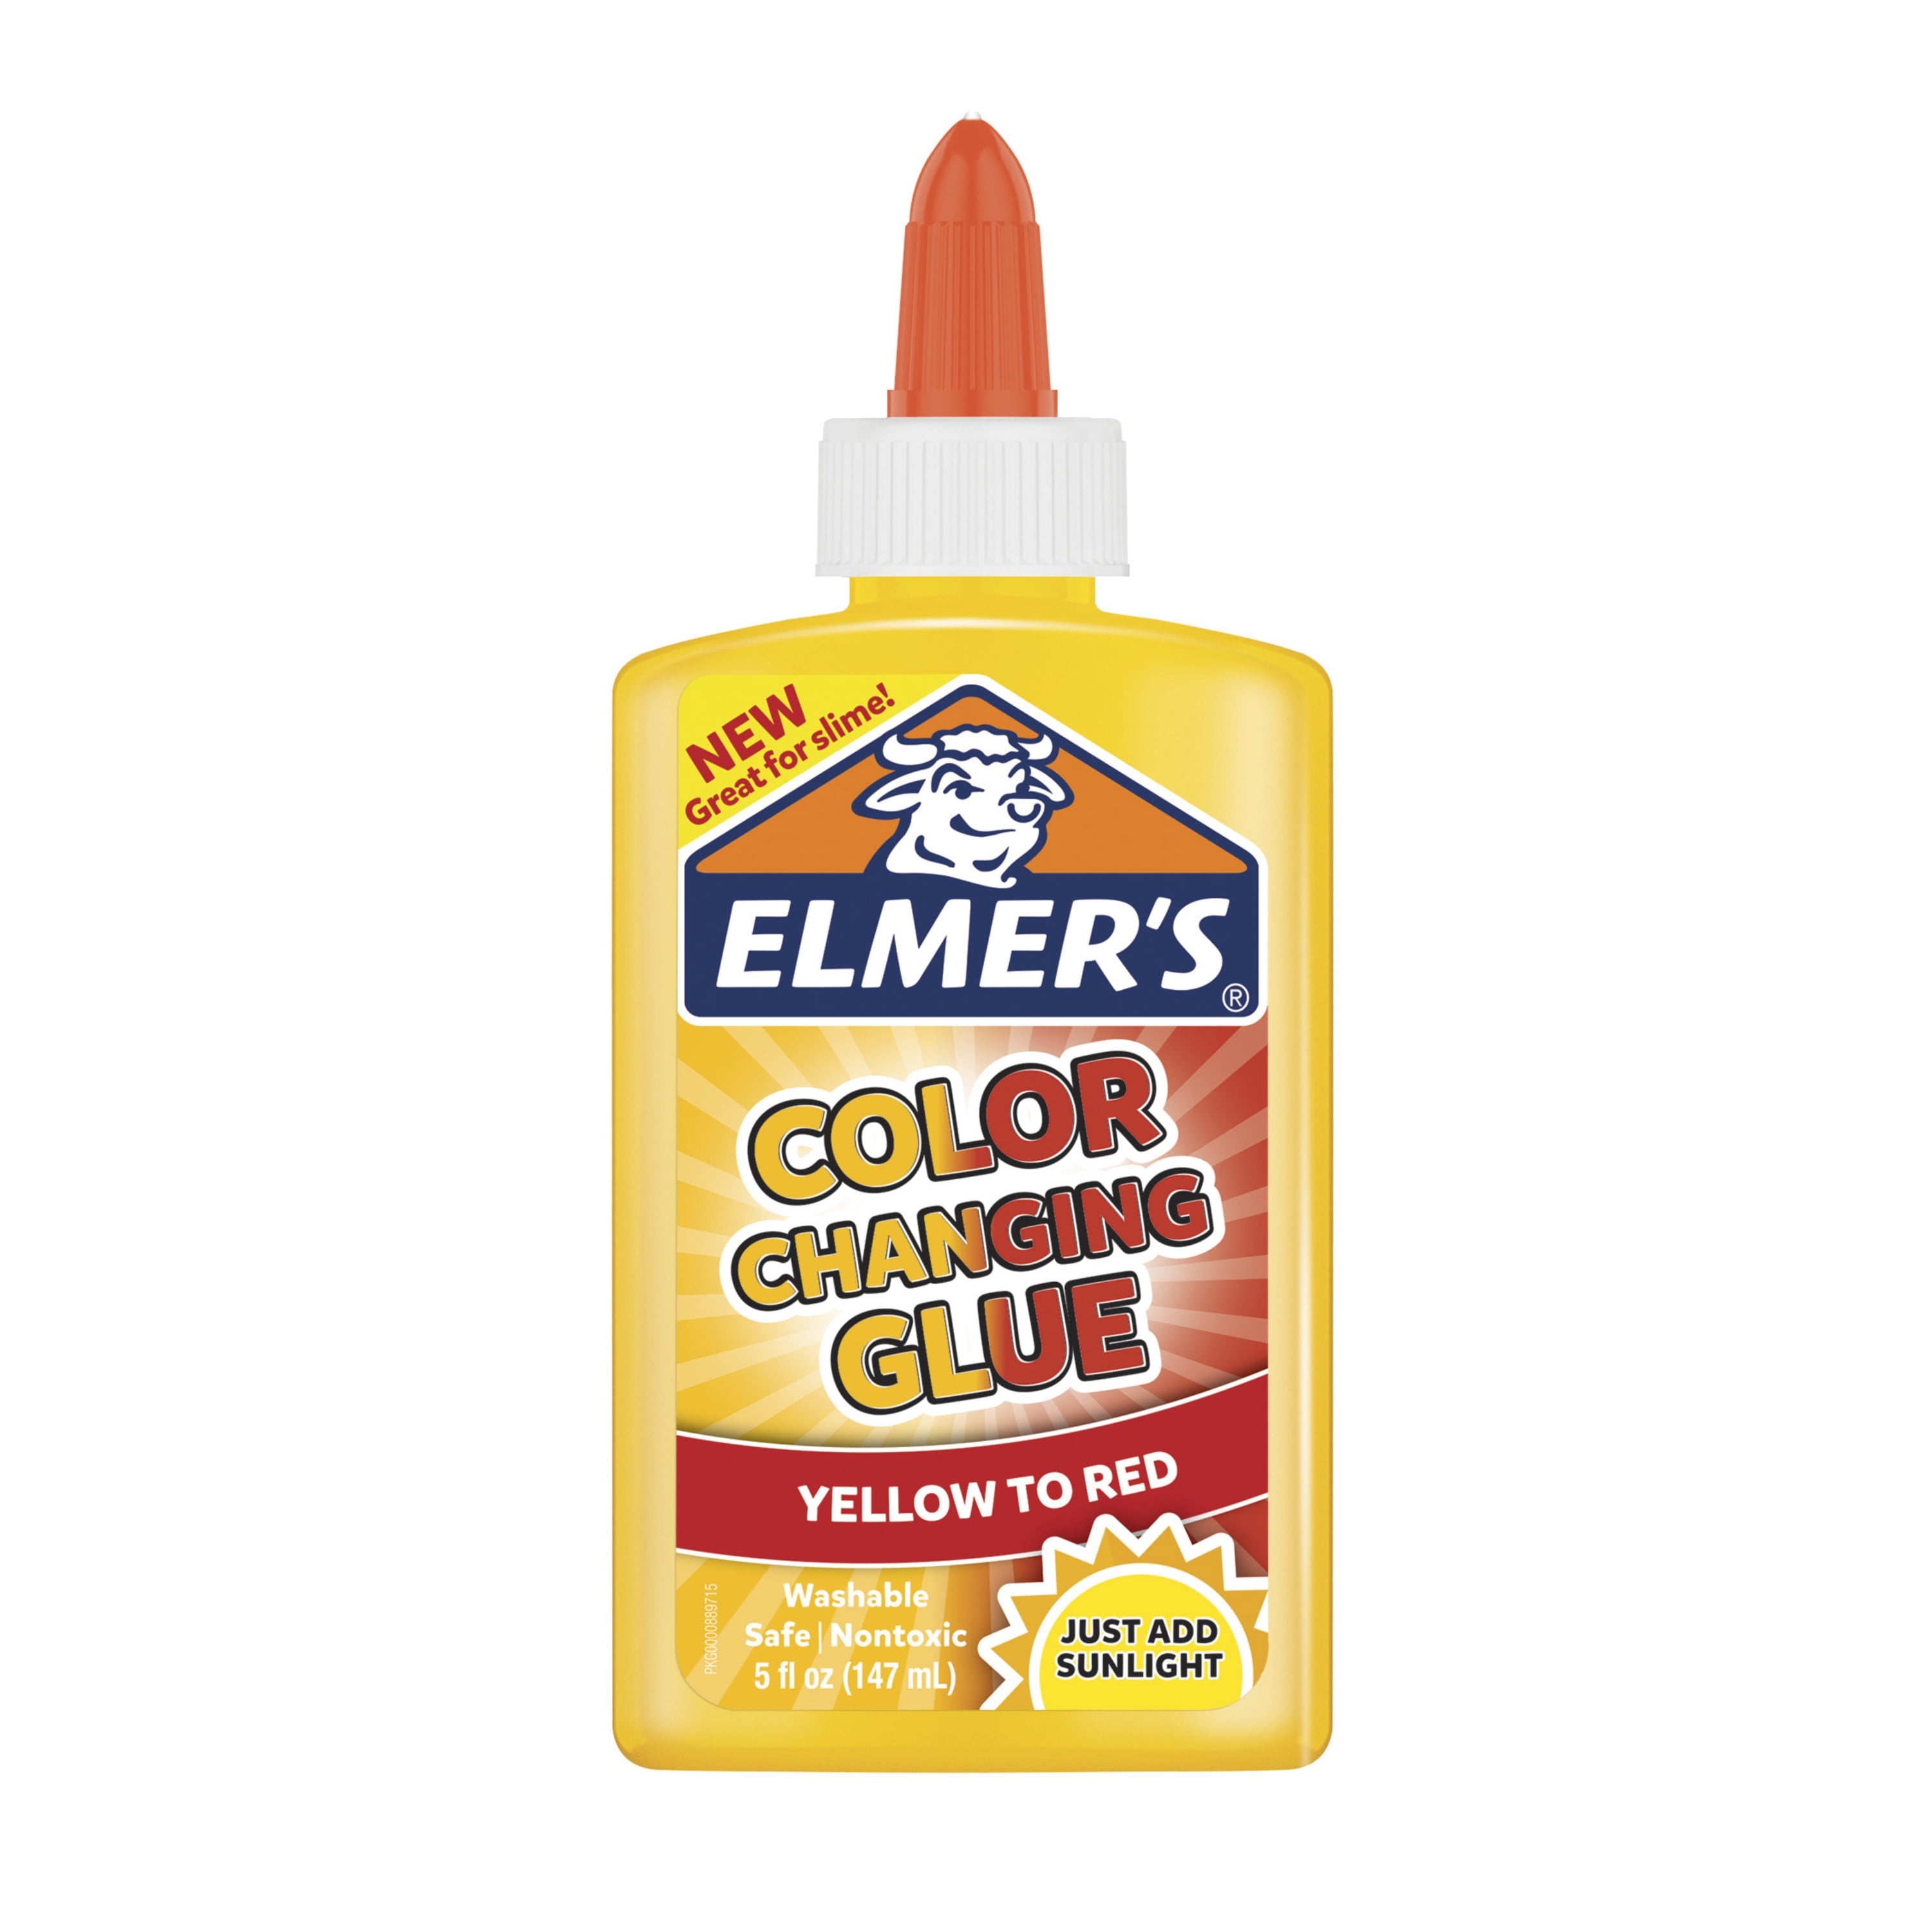 A Gallon Glue Slime